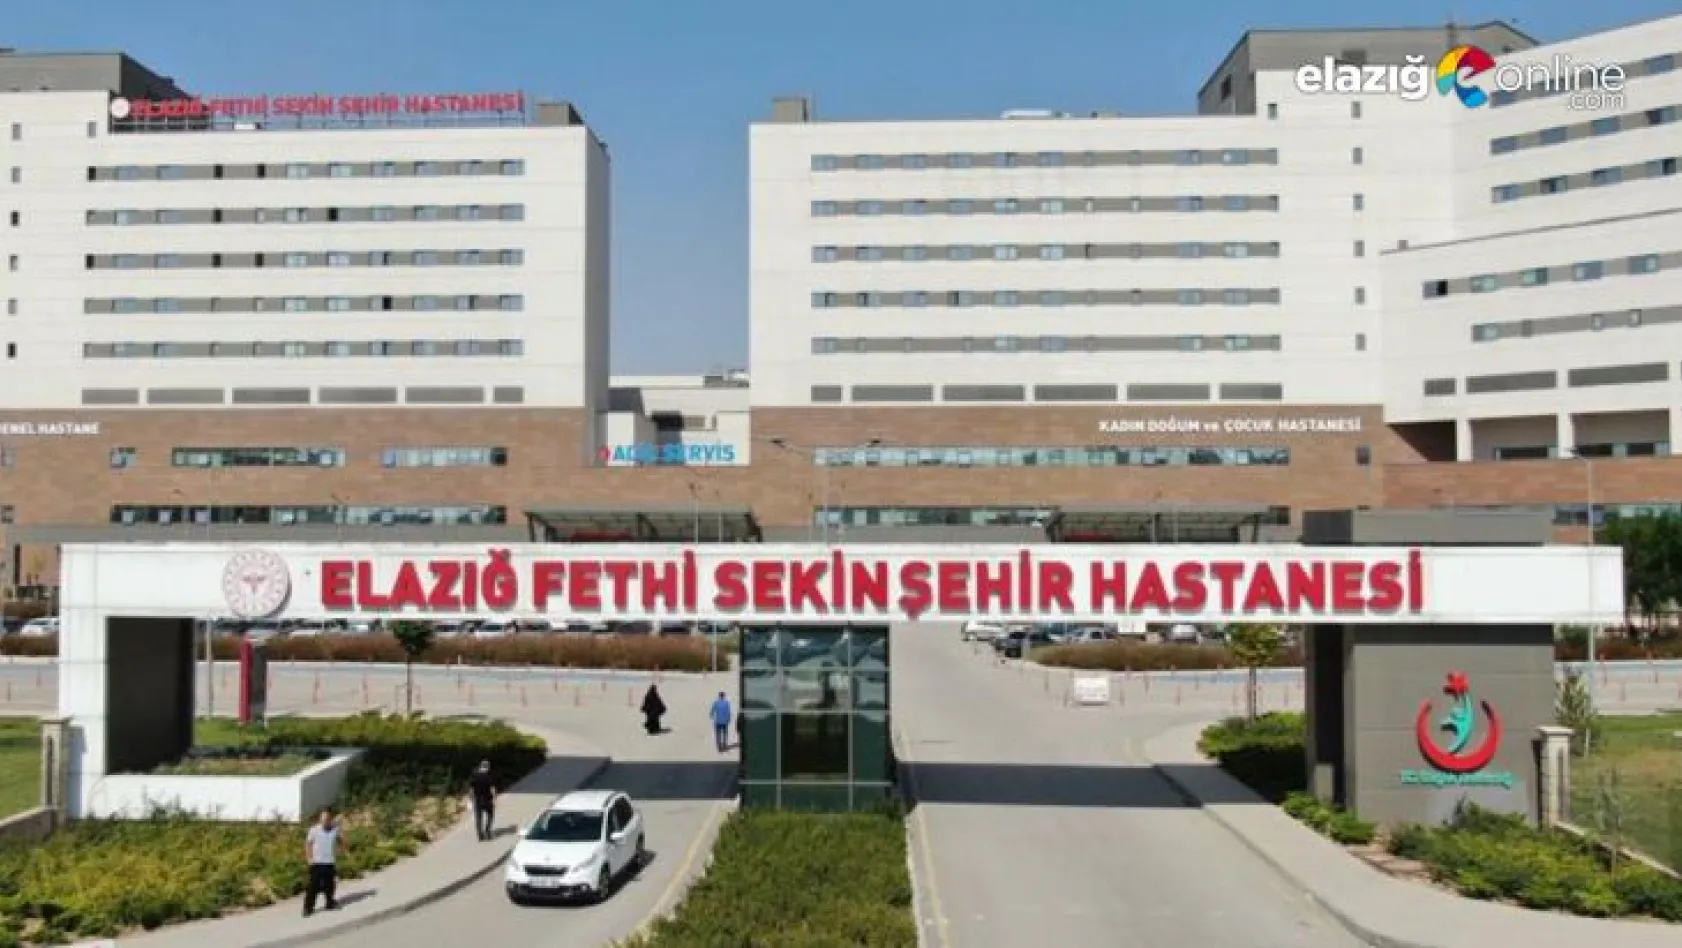 Fethi Sekin Şehir Hastanesinden müjdeli haber geldi